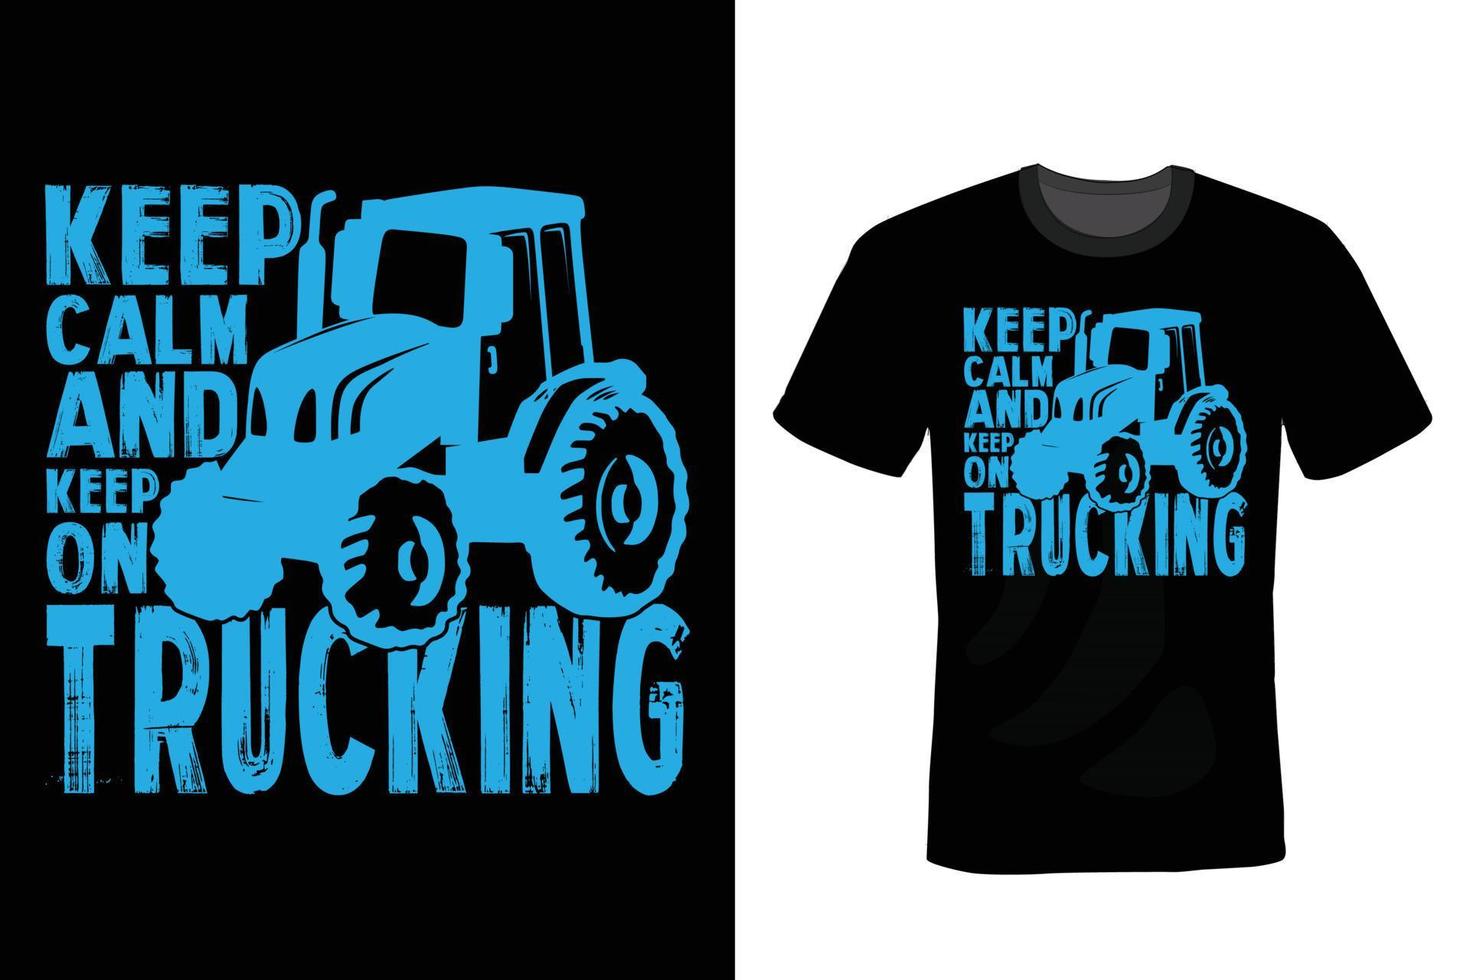 conception de t-shirt de camion, vintage, typographie vecteur